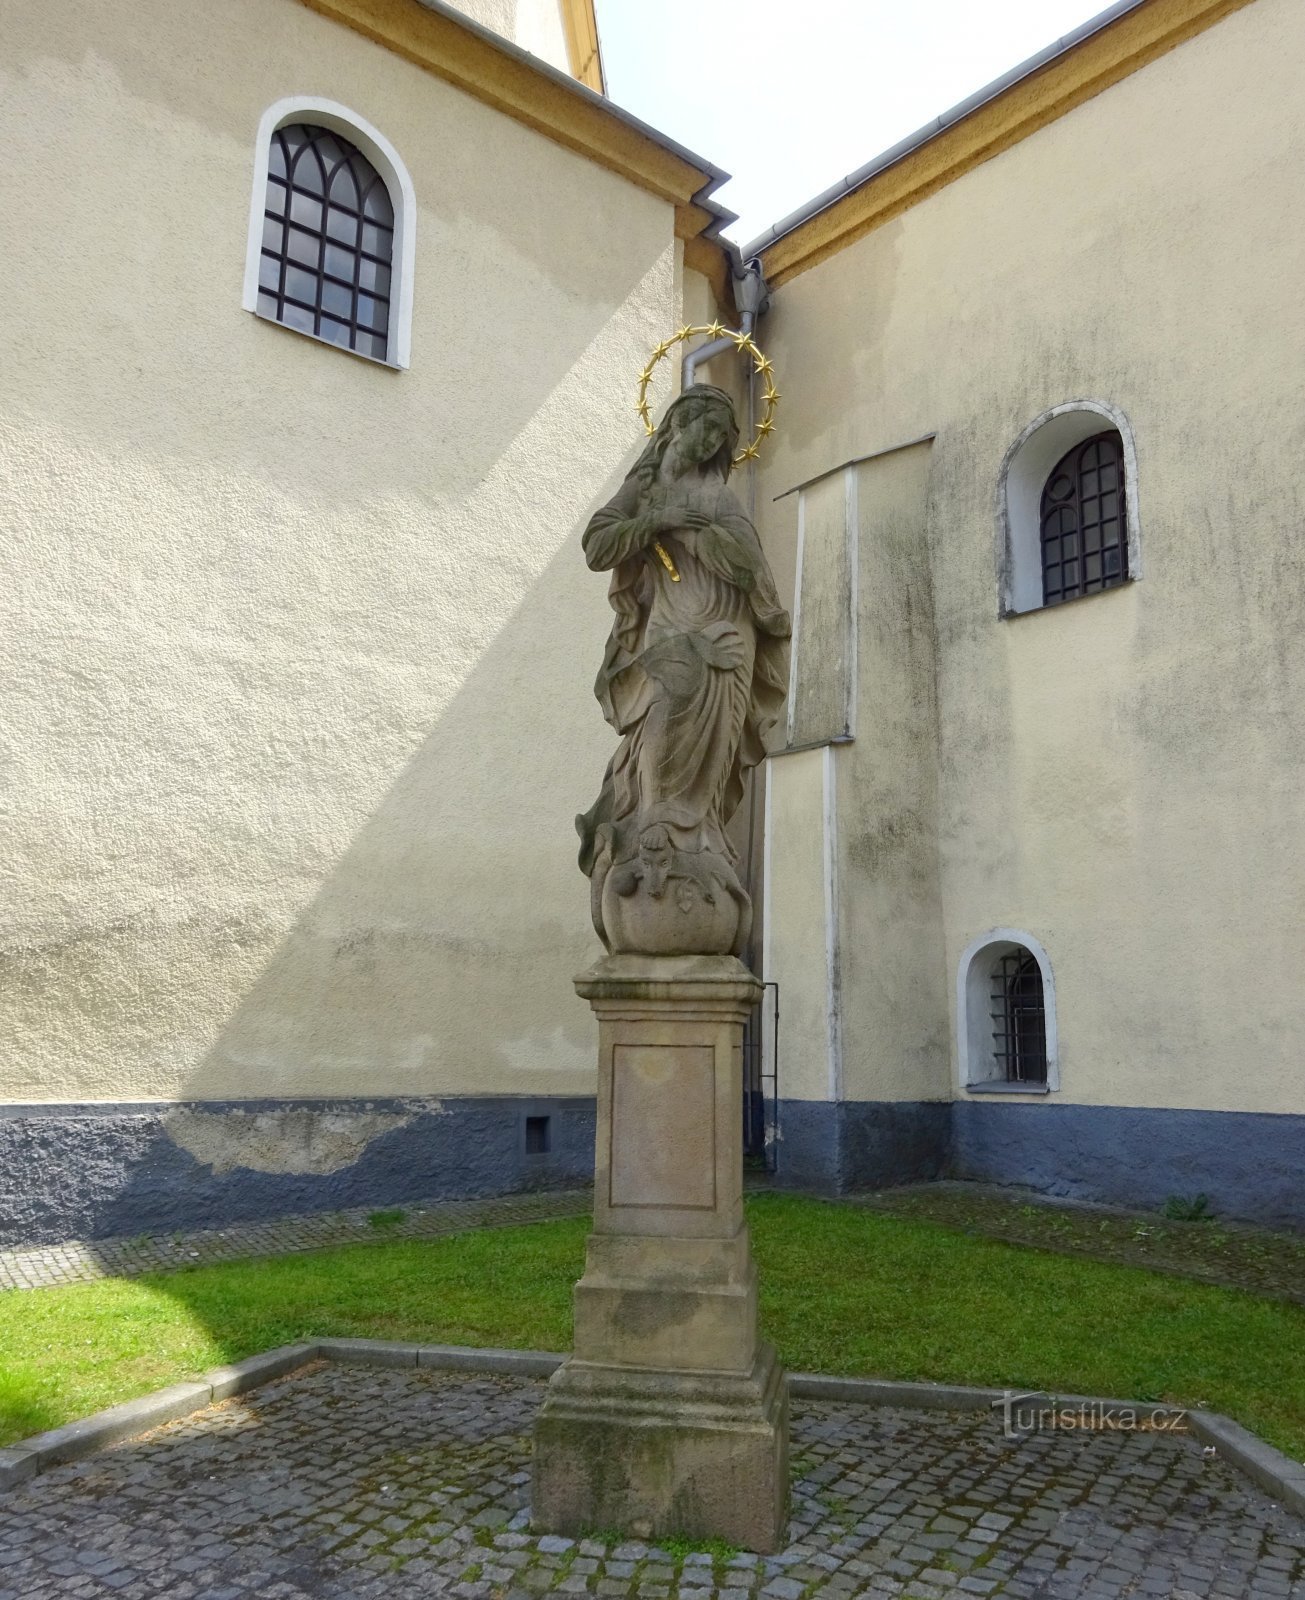 Klimkovice - staty av Jungfru Maria